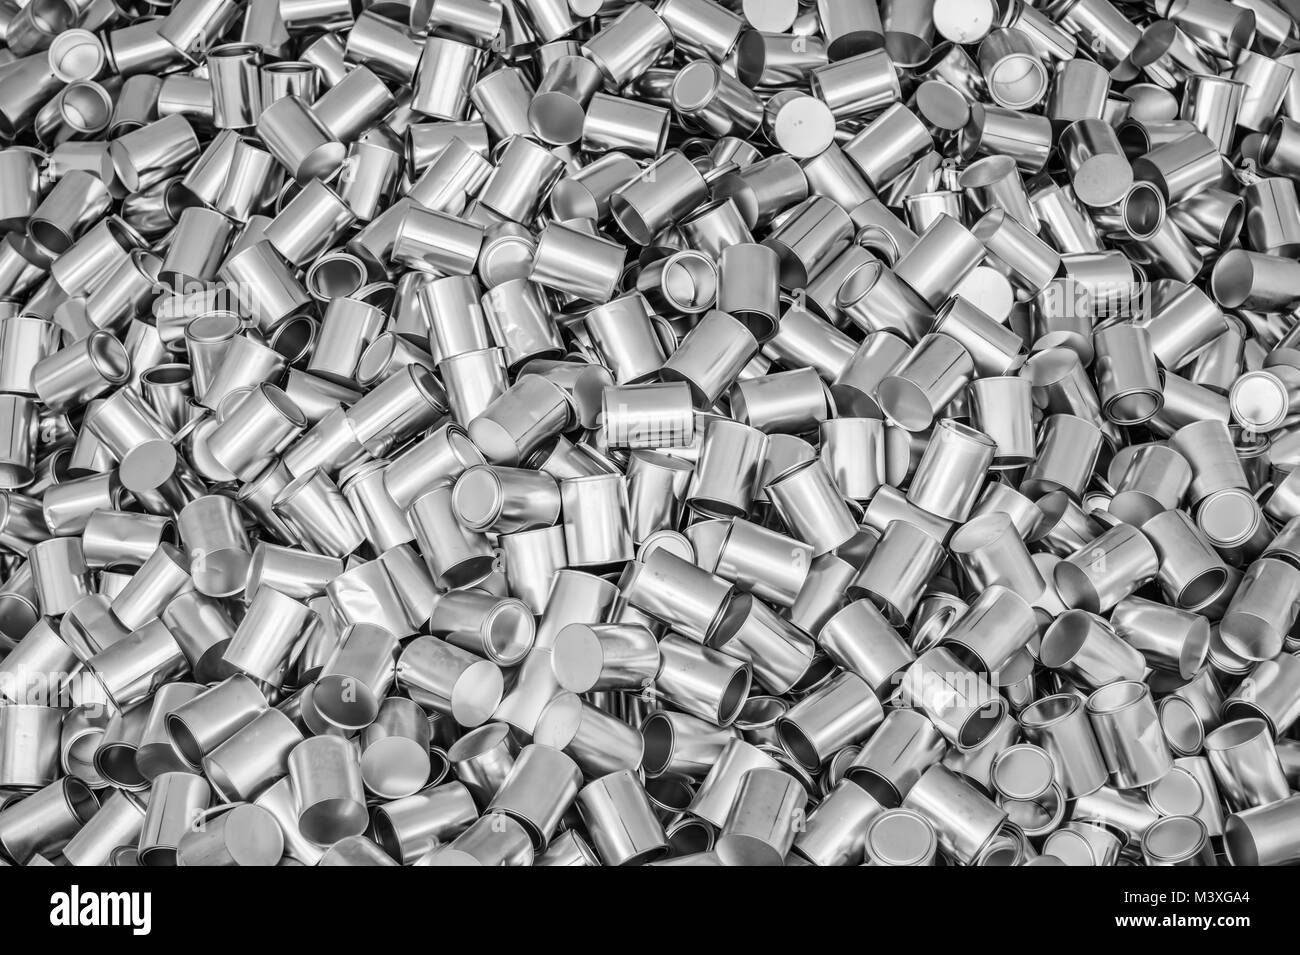 Antecedentes de las latas vacías de alimentos que llenen el encuadre en un concepto de seguridad alimentaria y nutrición Foto de stock